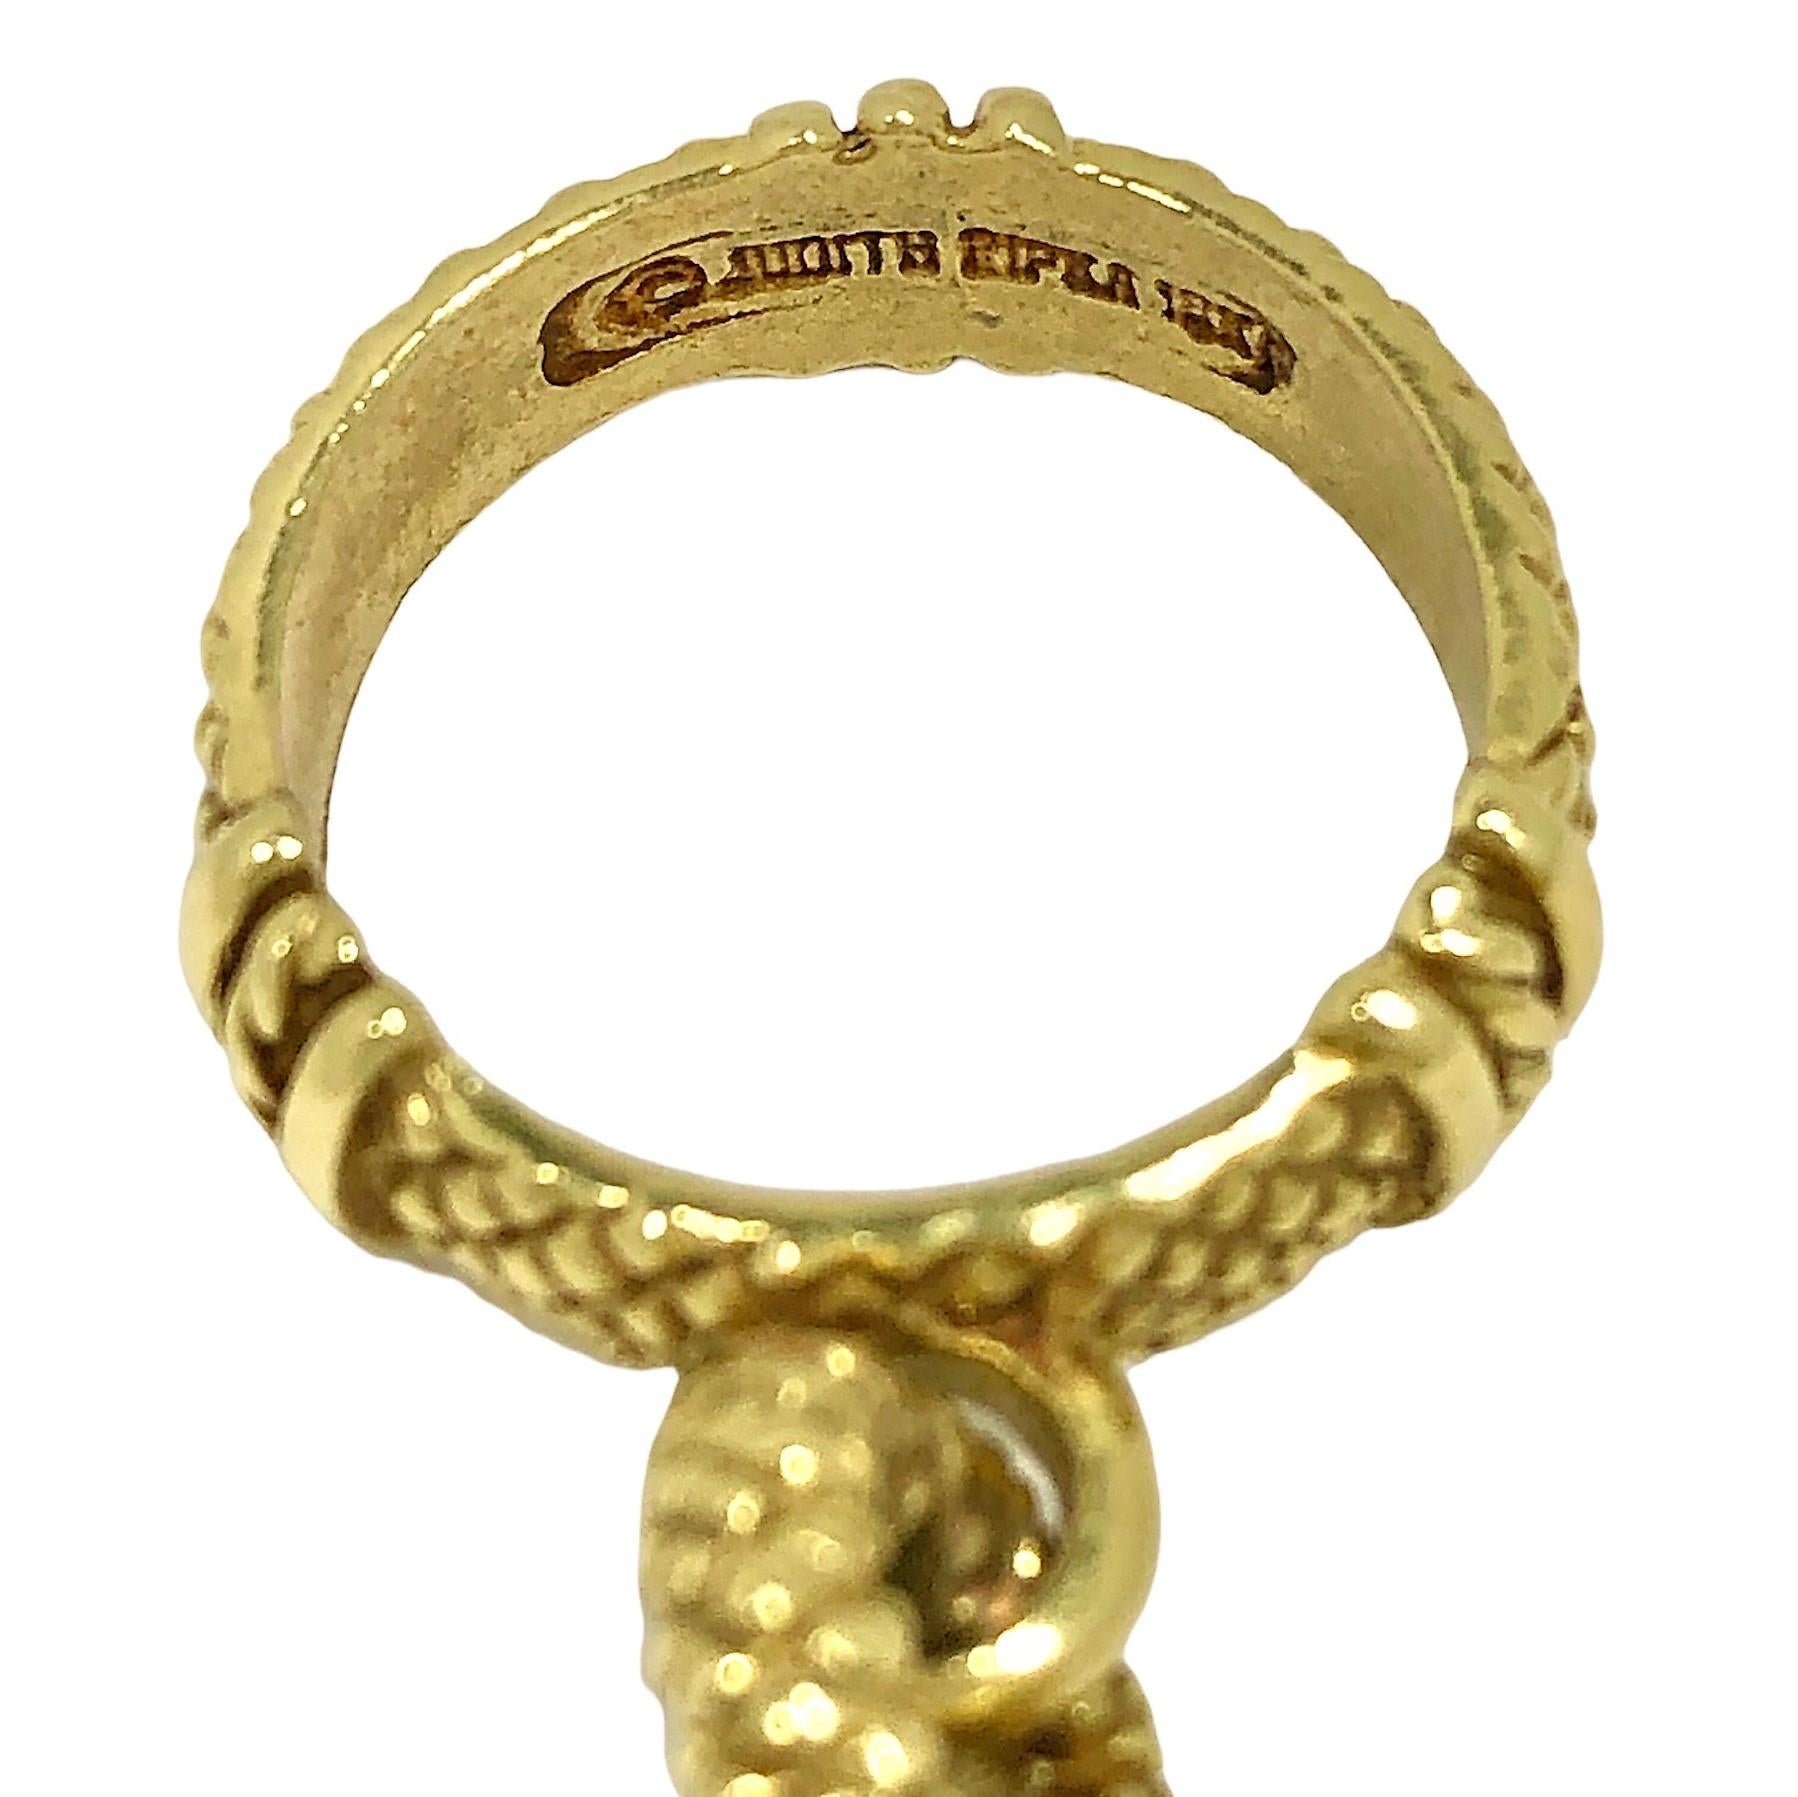 judith ripka 18k gold bracelet